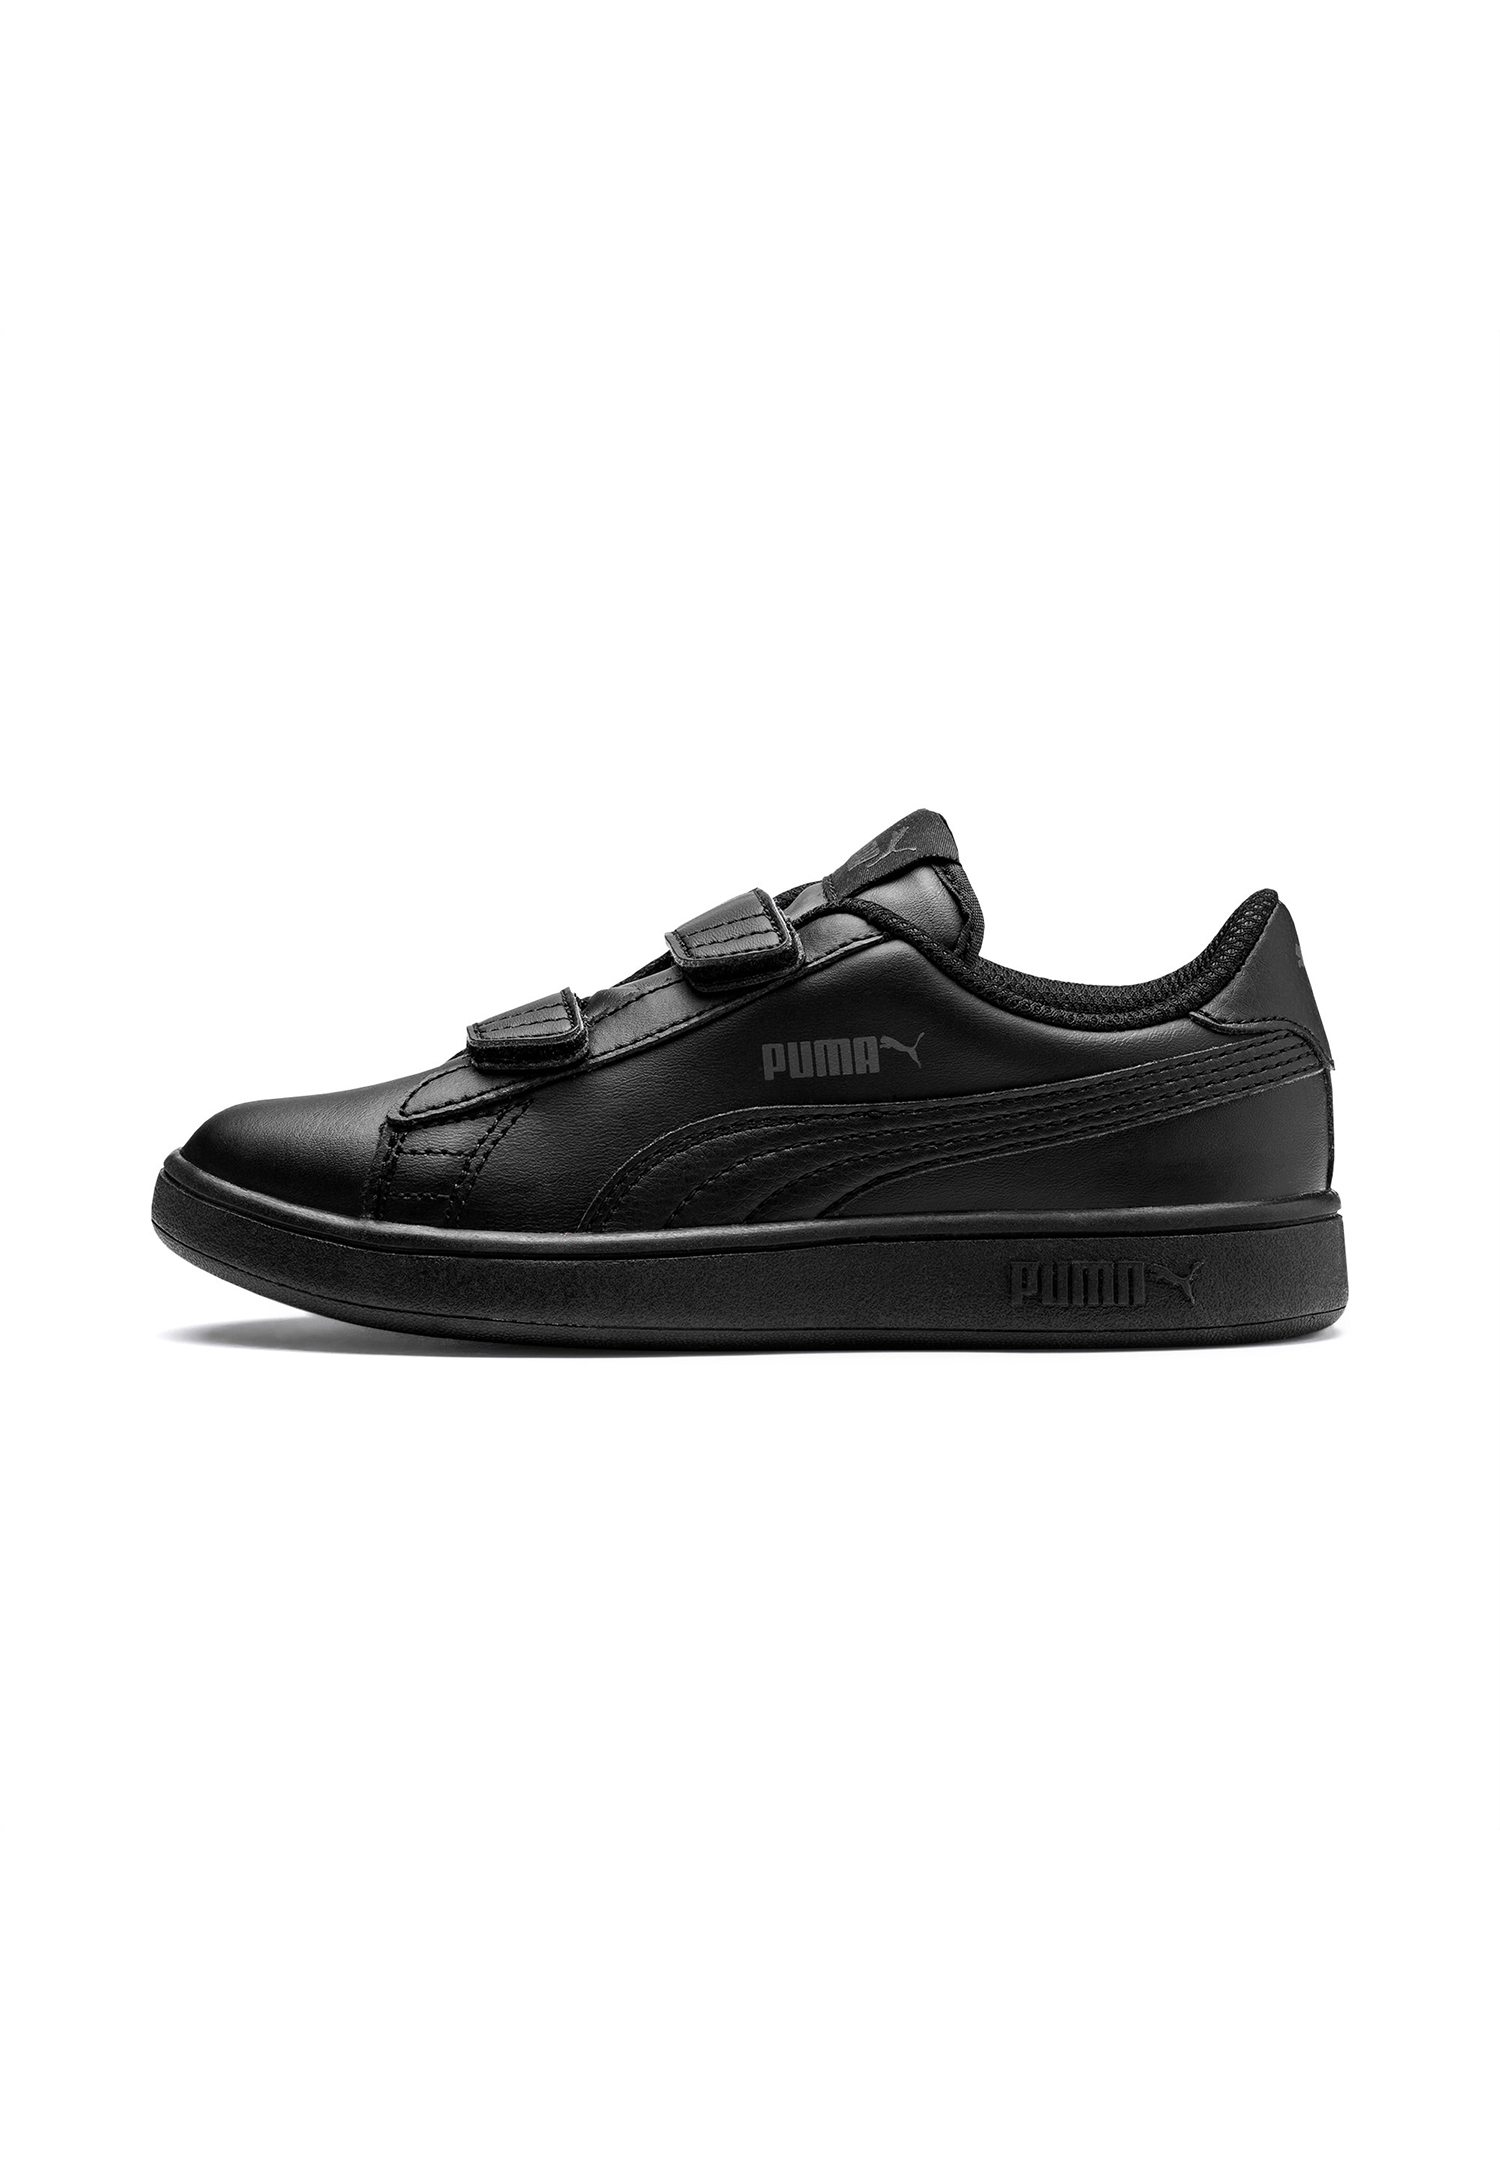 PUMA Smash V2 L V PS Kids Sneaker Schuhe schwarz 365173 01